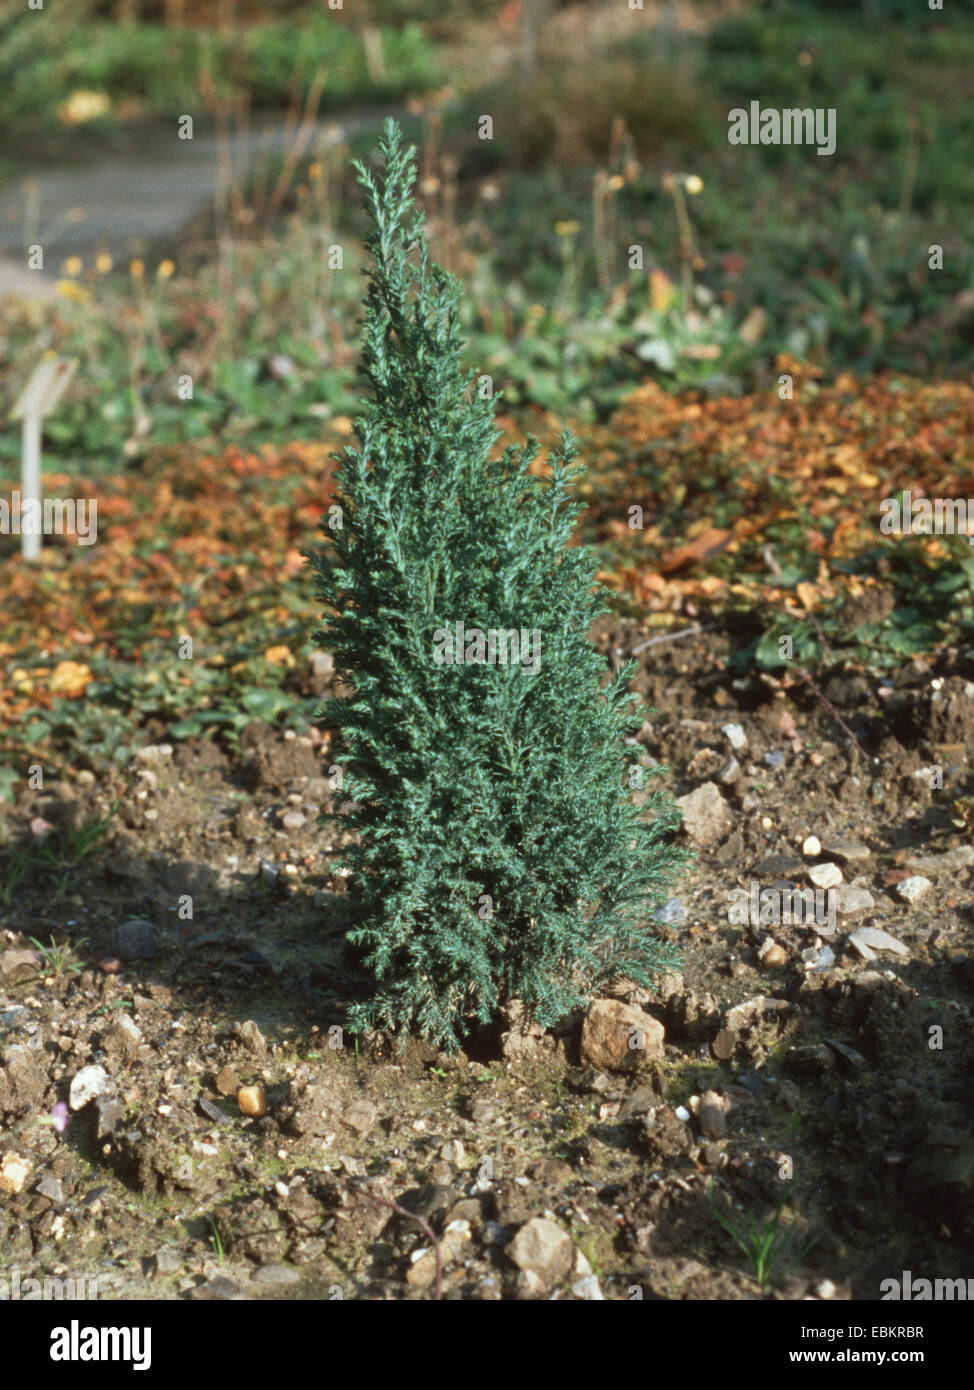 Lawson cypress, Port Orford cedar (Chamaecyparis lawsoniana 'Ellwoodii', Chamaecyparis lawsoniana Ellwoodii), cultivar Ellwoodii Stock Photo